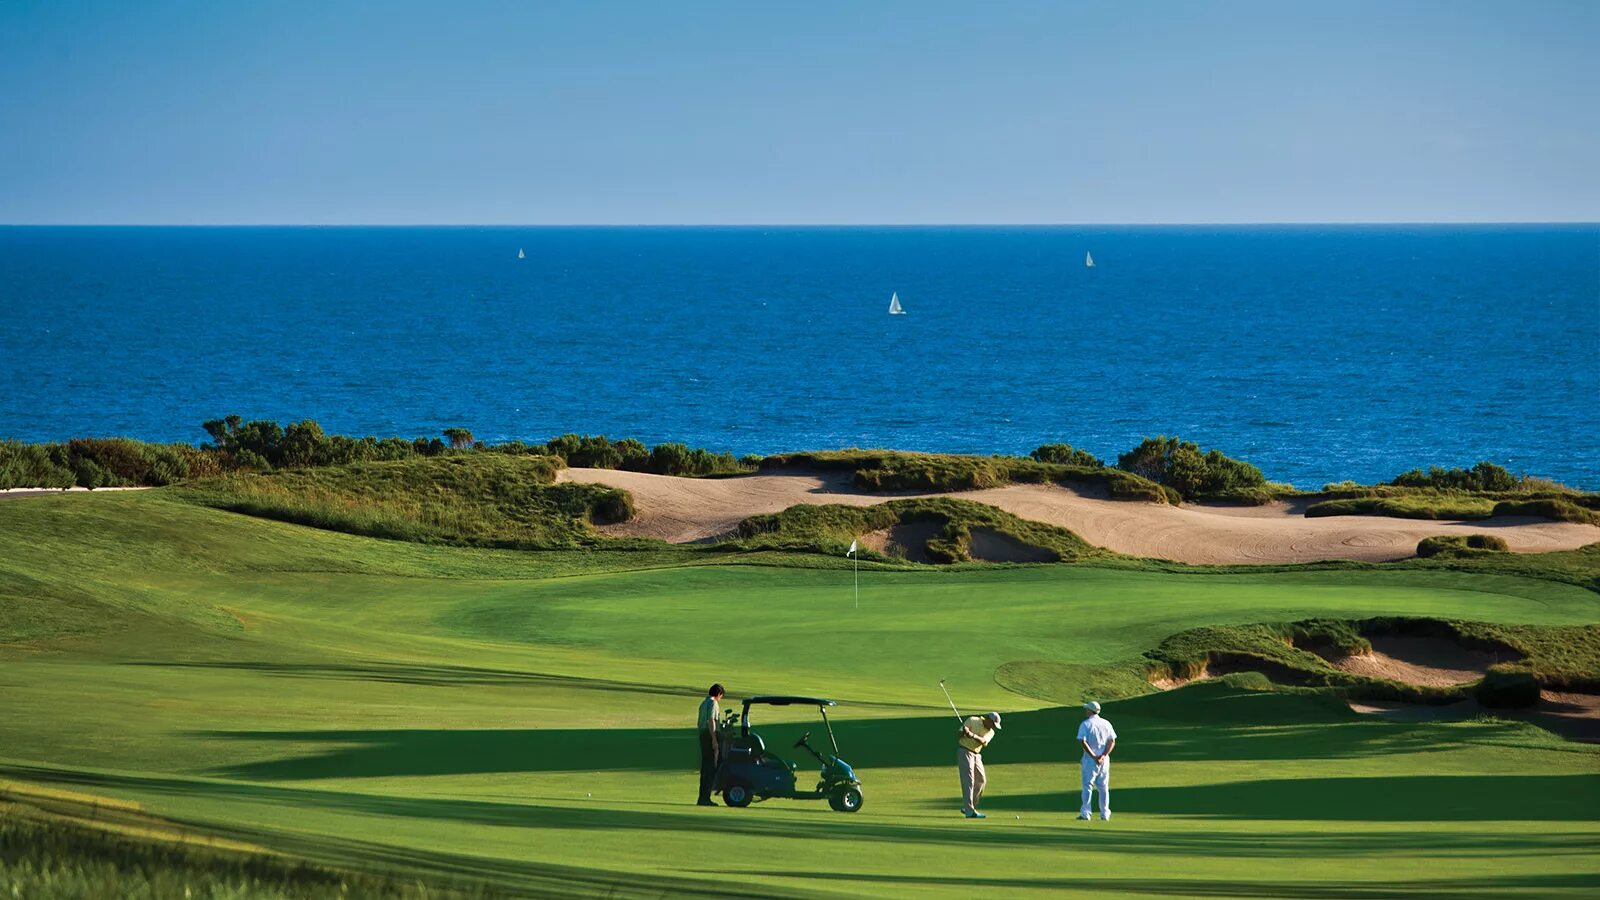 Laguna Niguel. Estoril – Golf course. Лагуна Нигуэль в Калифорнии. Гольф клуб на Северном Кипре. Beach countries